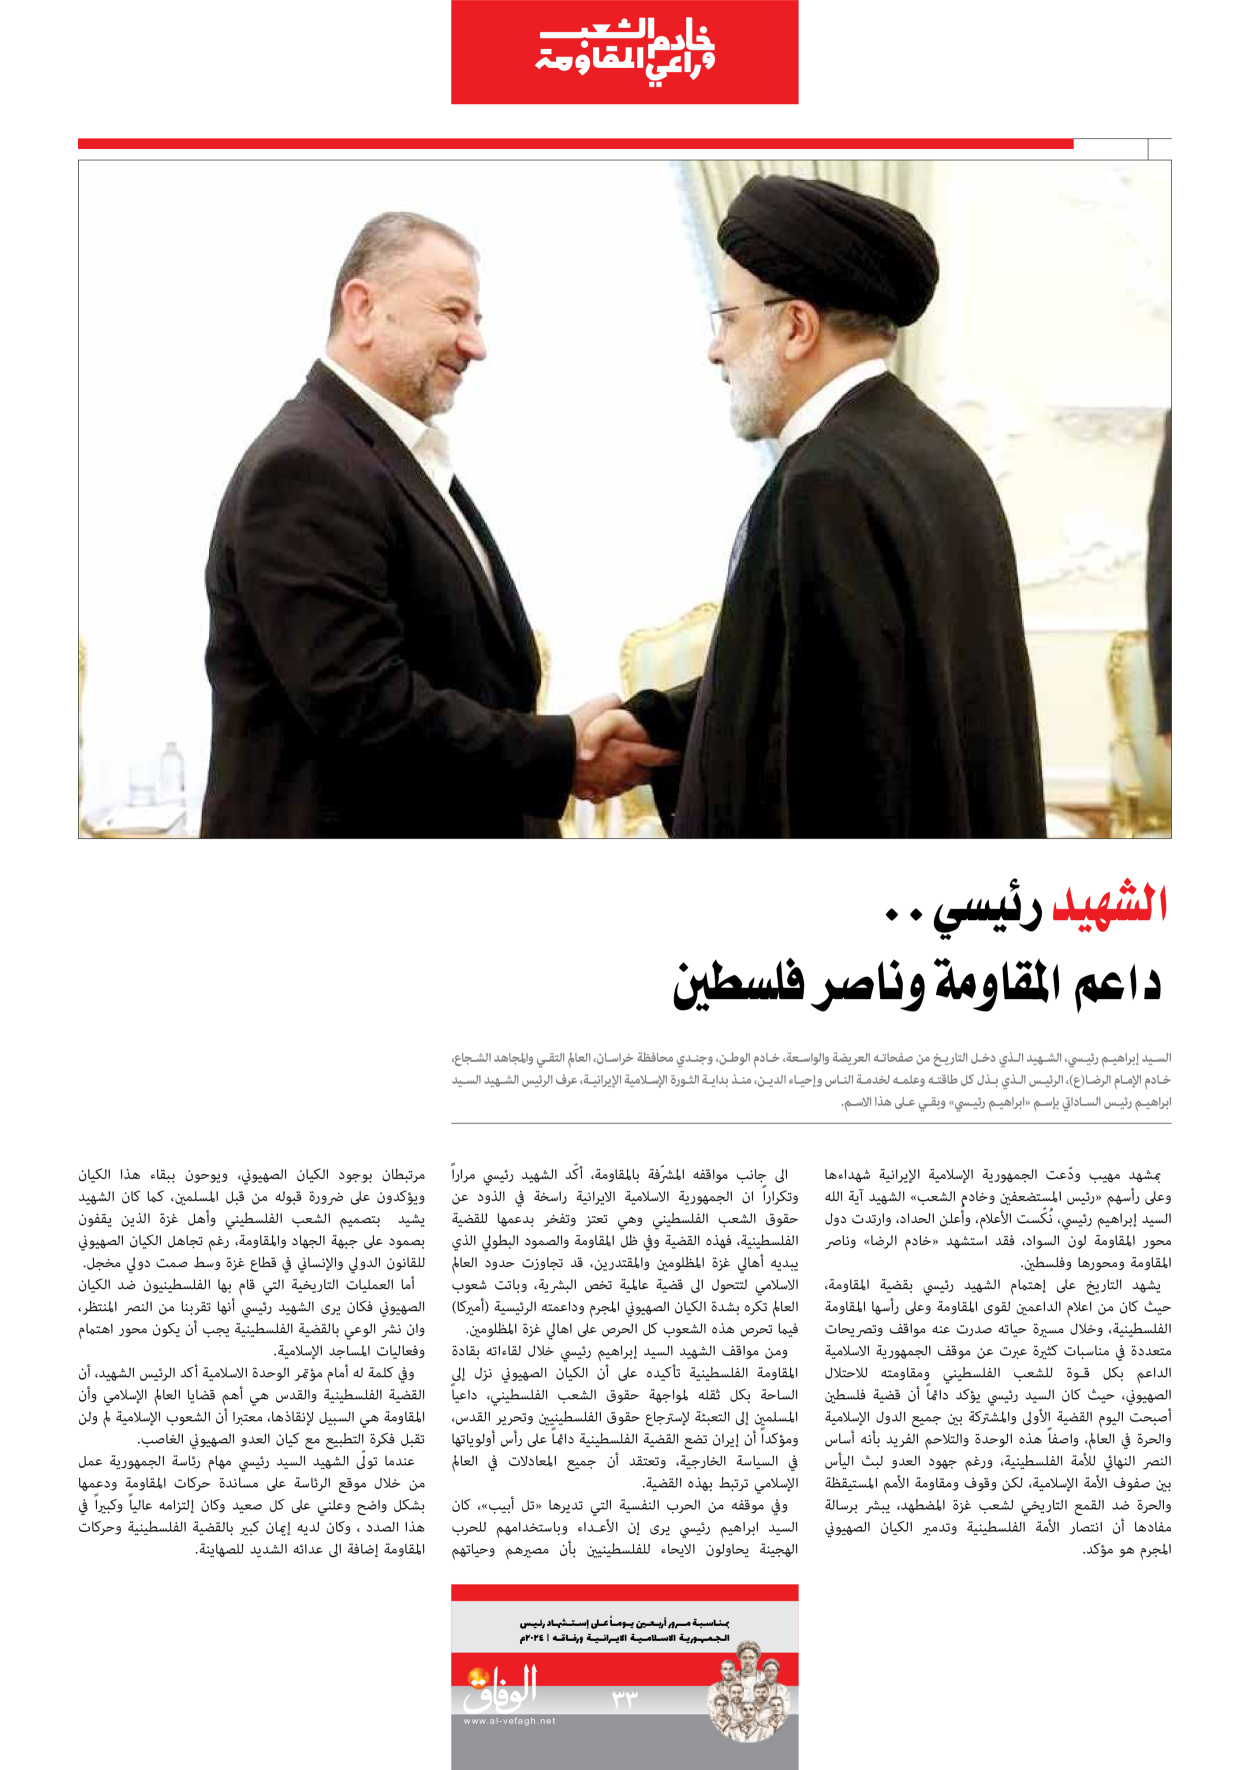 صحیفة ایران الدولیة الوفاق - ملحق ویژه نامه چهلم شهید رییسی - ٢٩ يونيو ٢٠٢٤ - الصفحة ۳۳